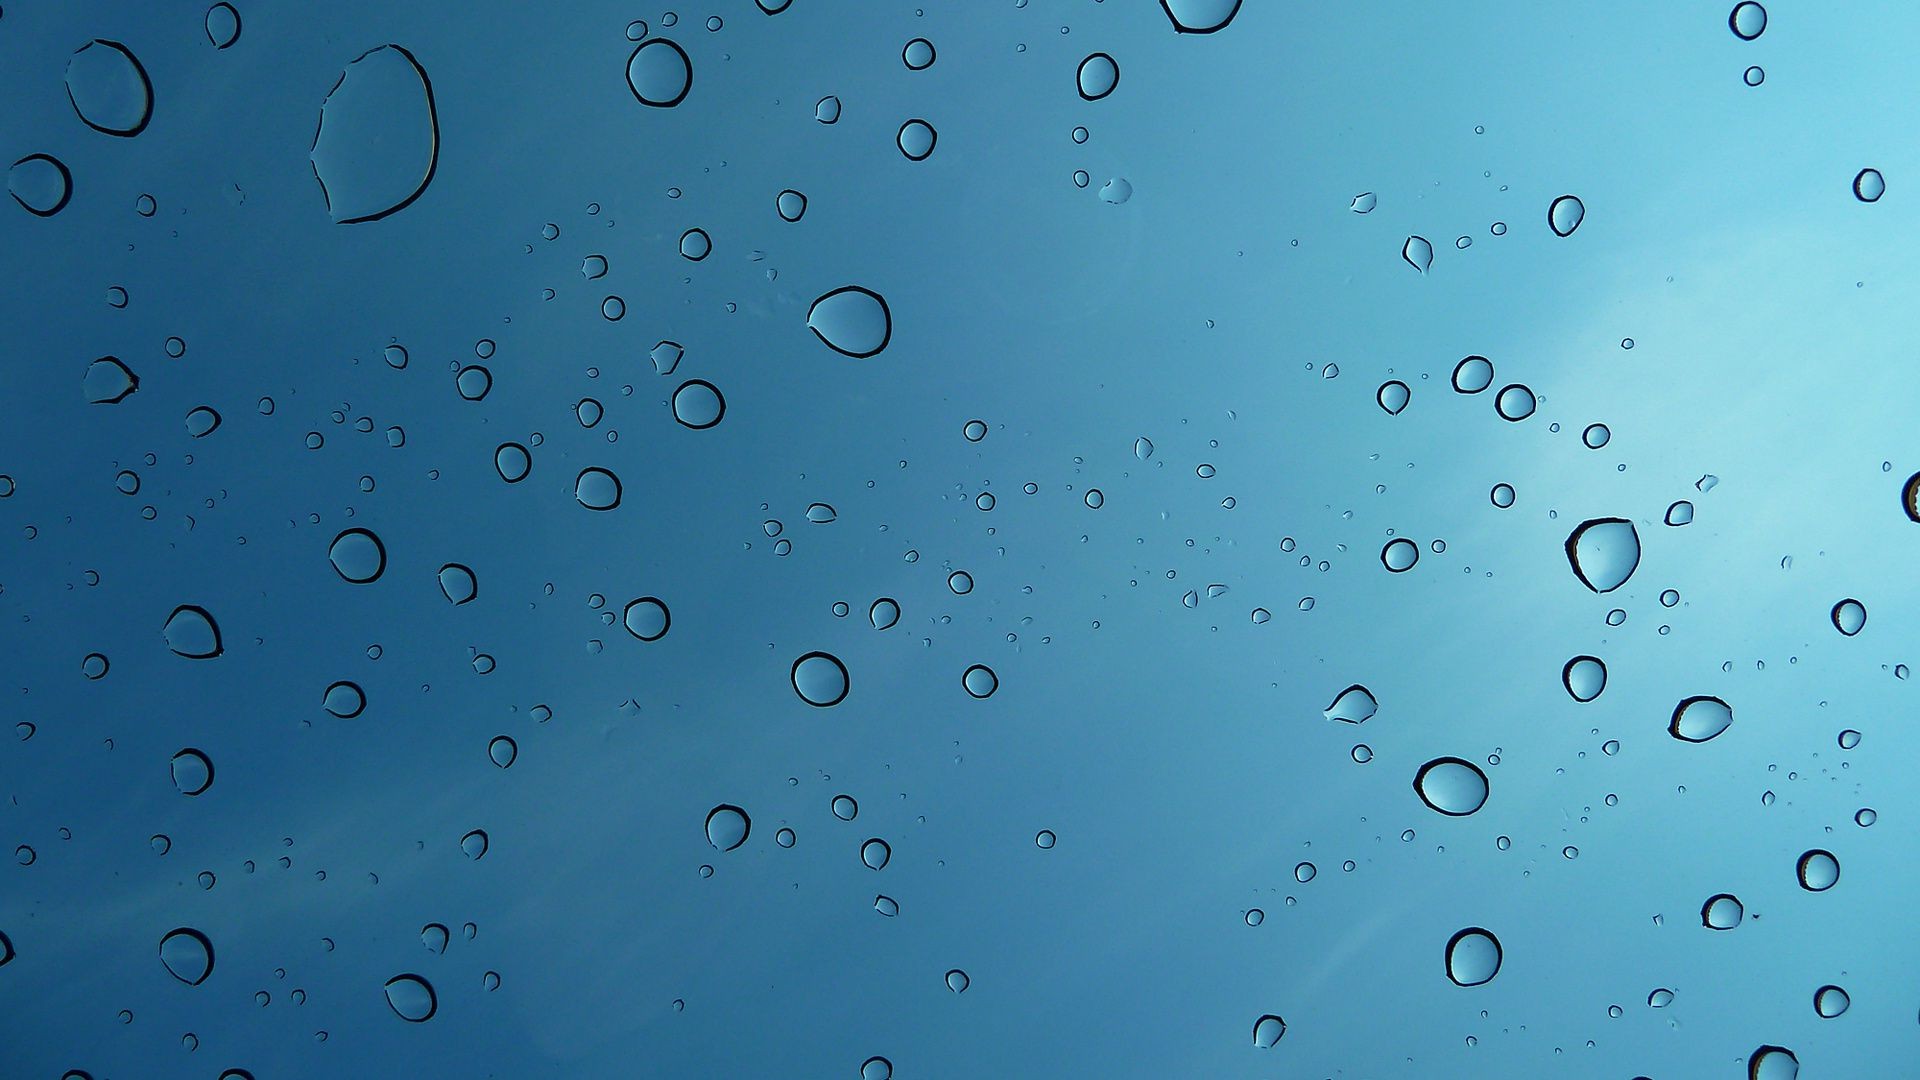 капельки и вода дождь мокрый падение пузырь капли чистые понятно всплеск бирюза мыть жидкость росы чистота чисто воды потека капли пульсация